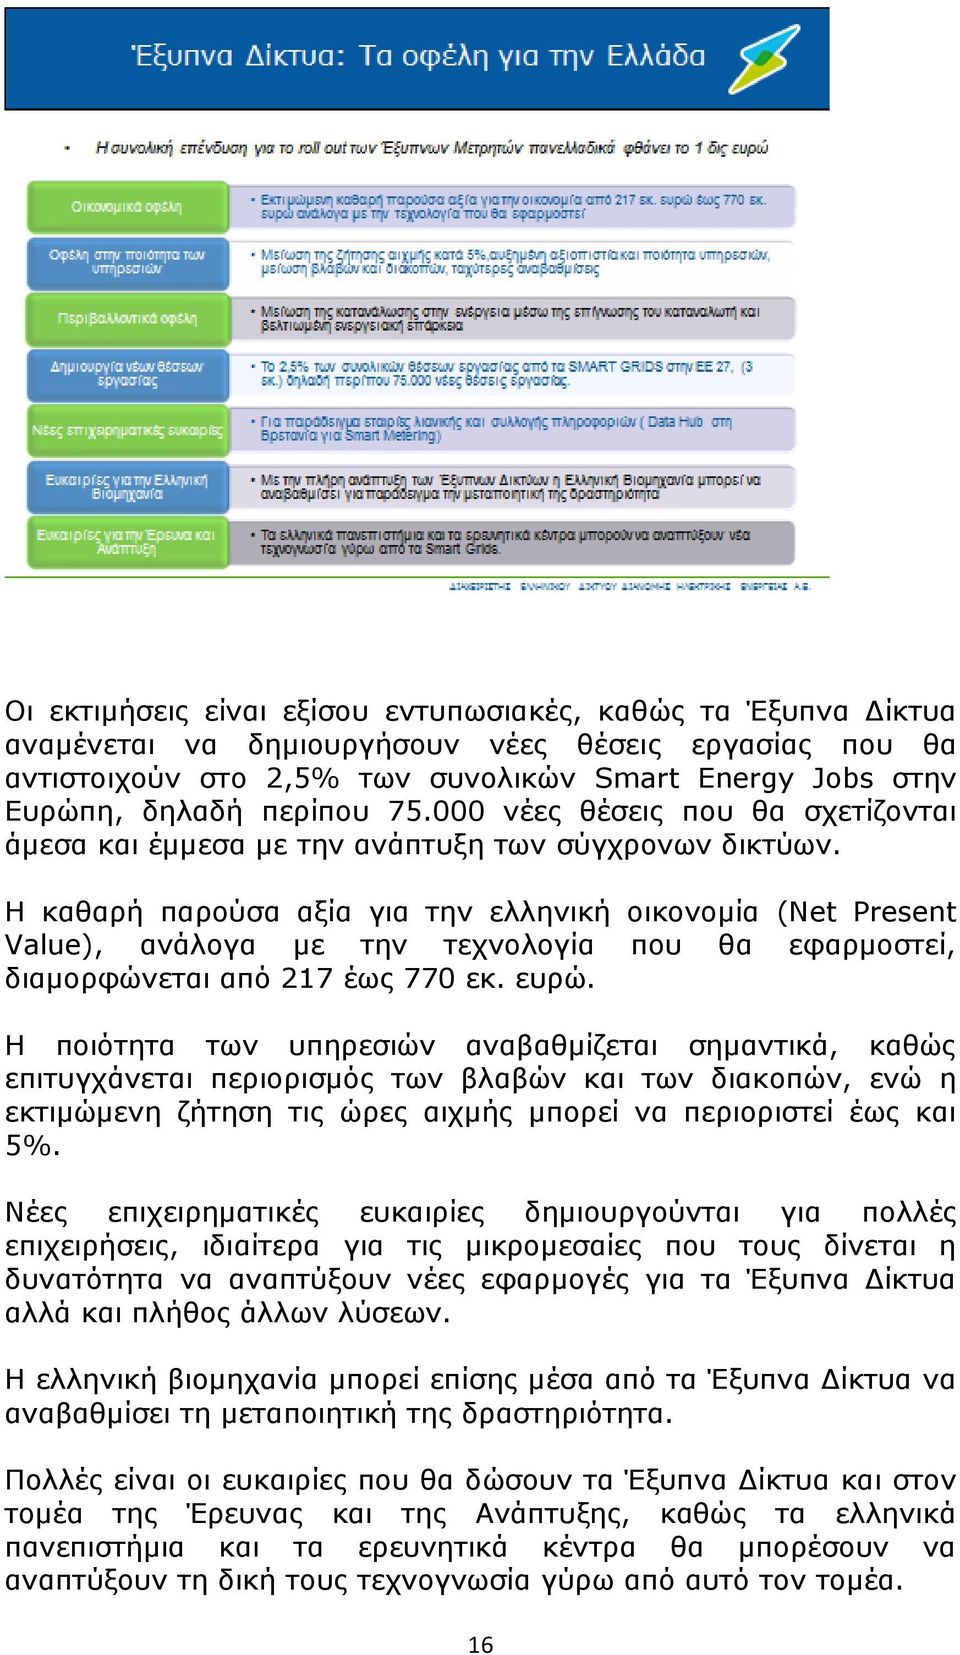 Η καθαρή παρούσα αξία για την ελληνική οικονομία (Net Present Value), ανάλογα με την τεχνολογία που θα εφαρμοστεί, διαμορφώνεται από 217 έως 770 εκ. ευρώ.